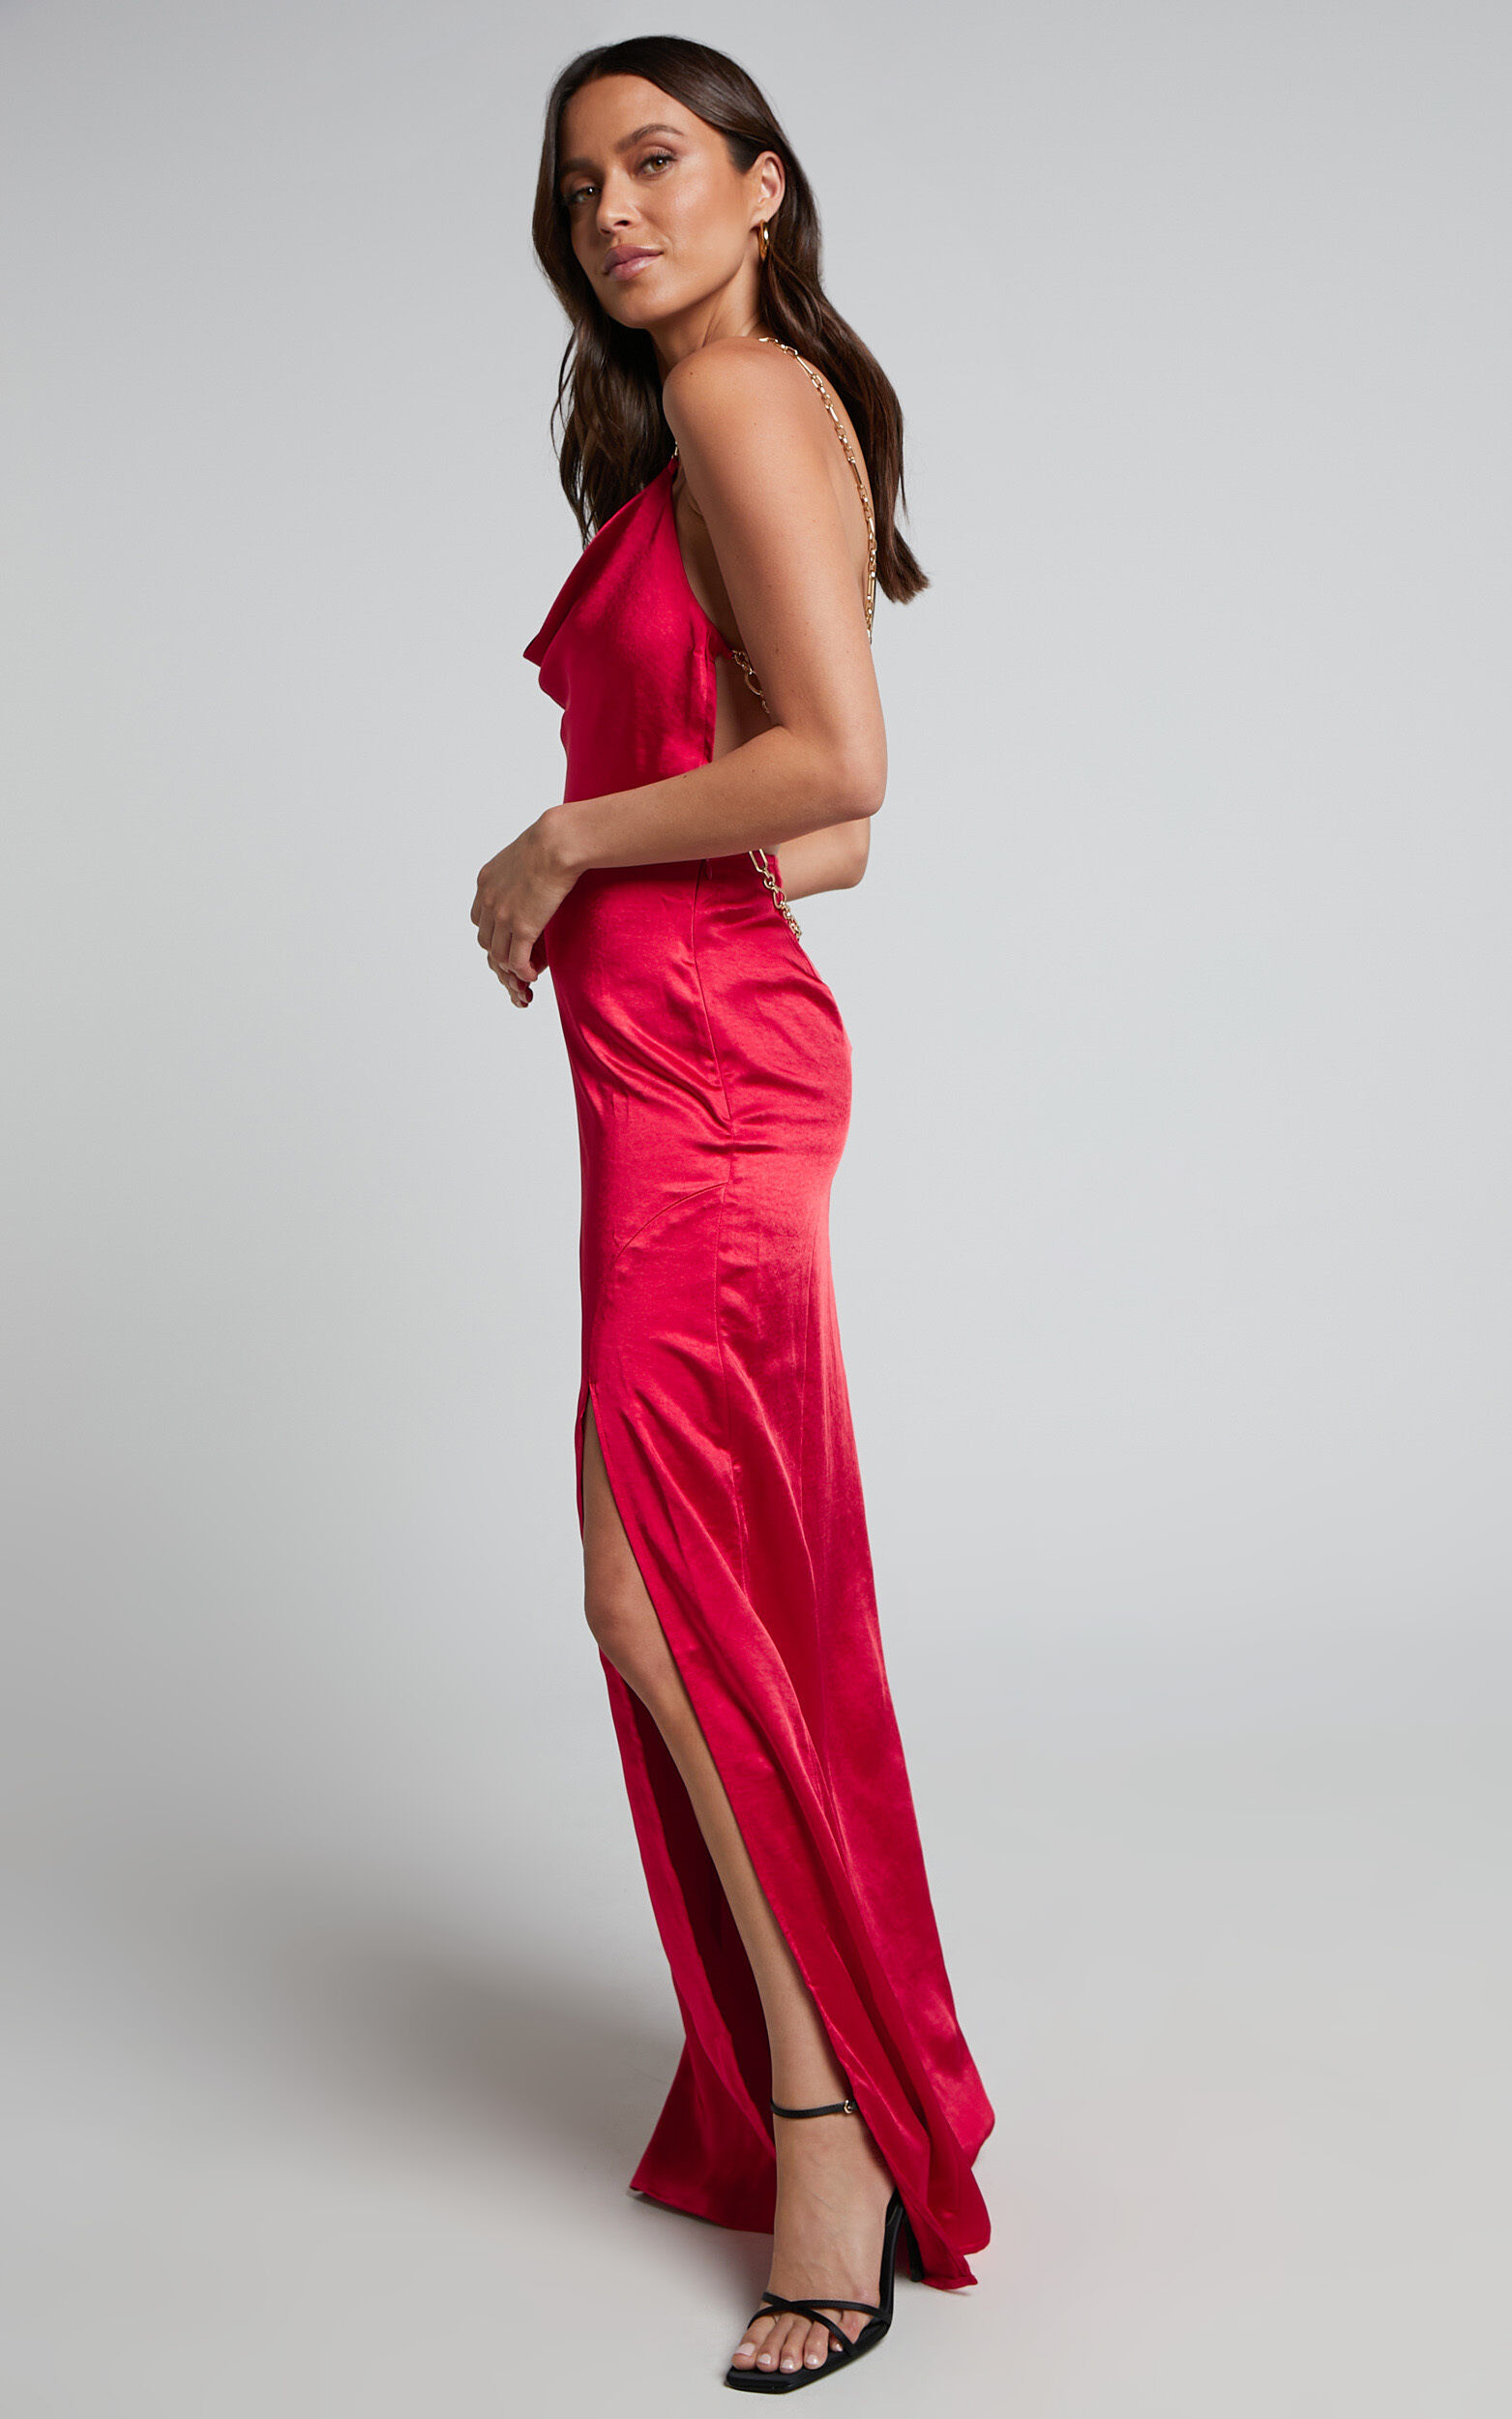 Bravia Maxi Dress - Chain Strap Open Back Satin Dress in Red | Showpo USA